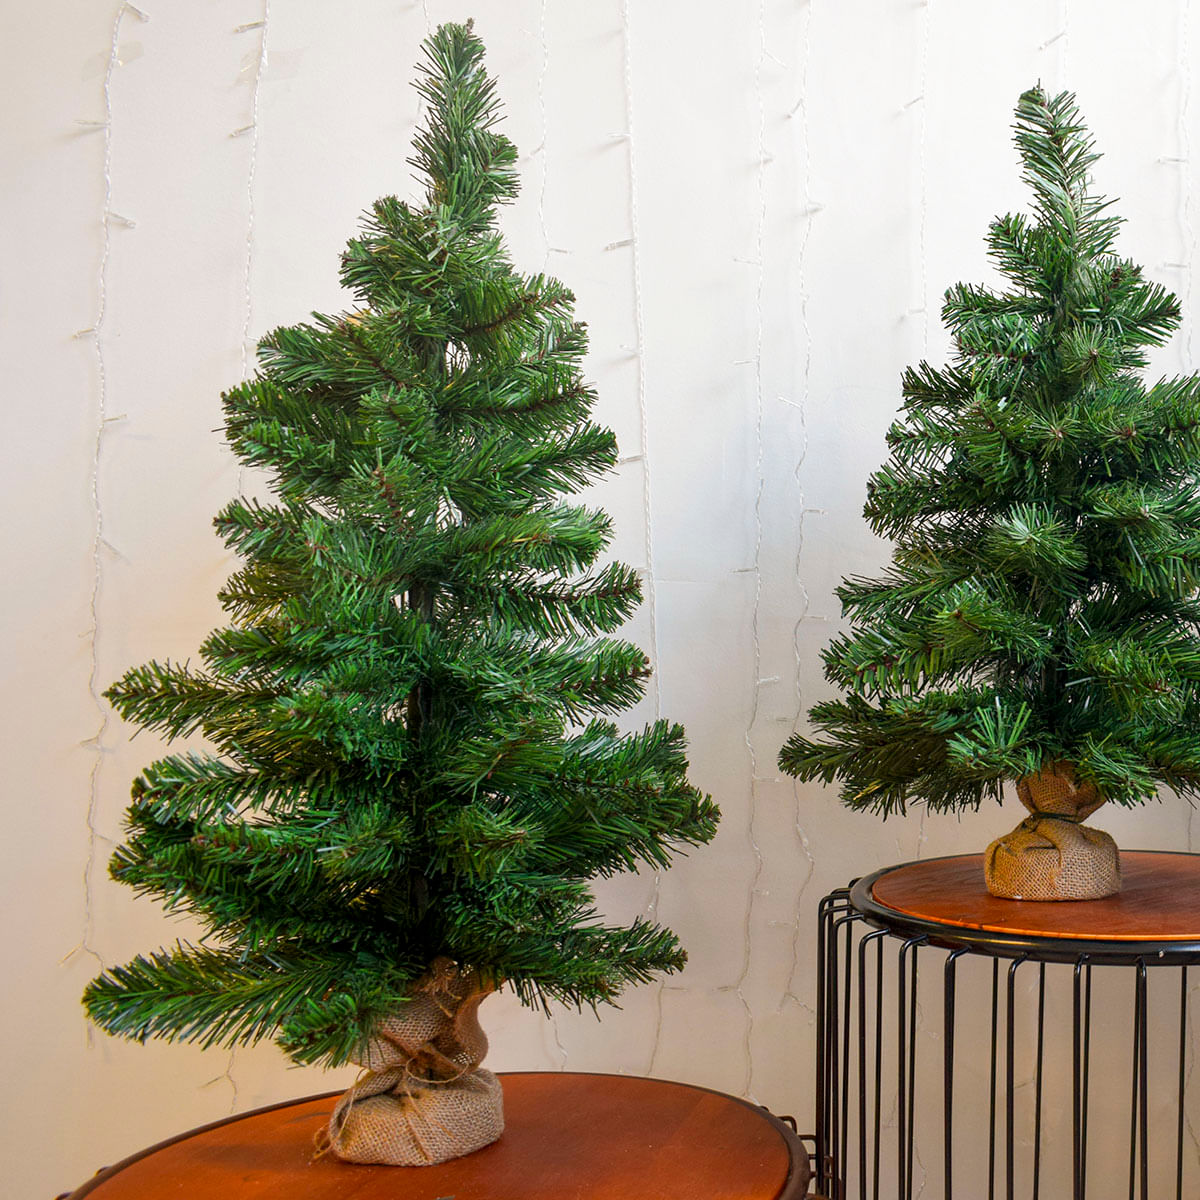 Árvore de Natal Nevada na Base 90cm - Formosinha, Flores e Plantas  Permanentes, Artigos de Decoração